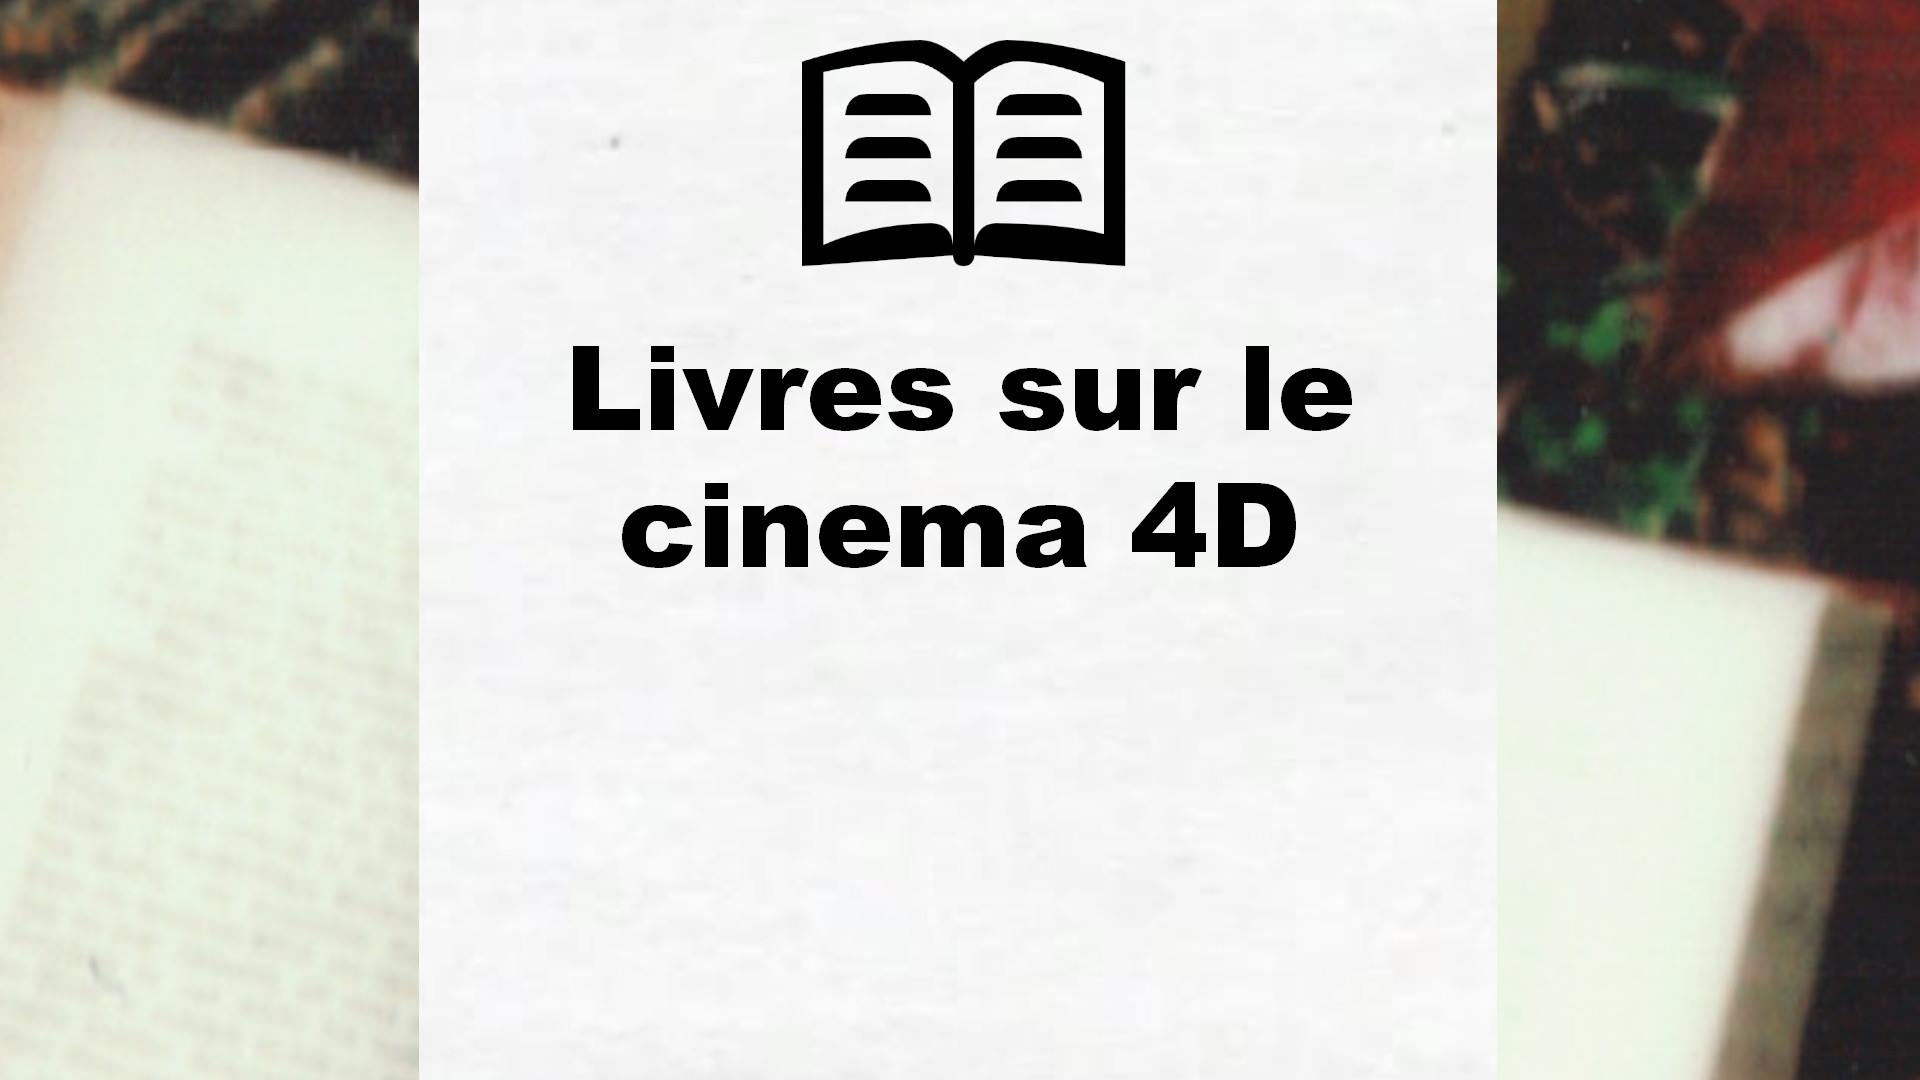 Livres sur le cinema 4D